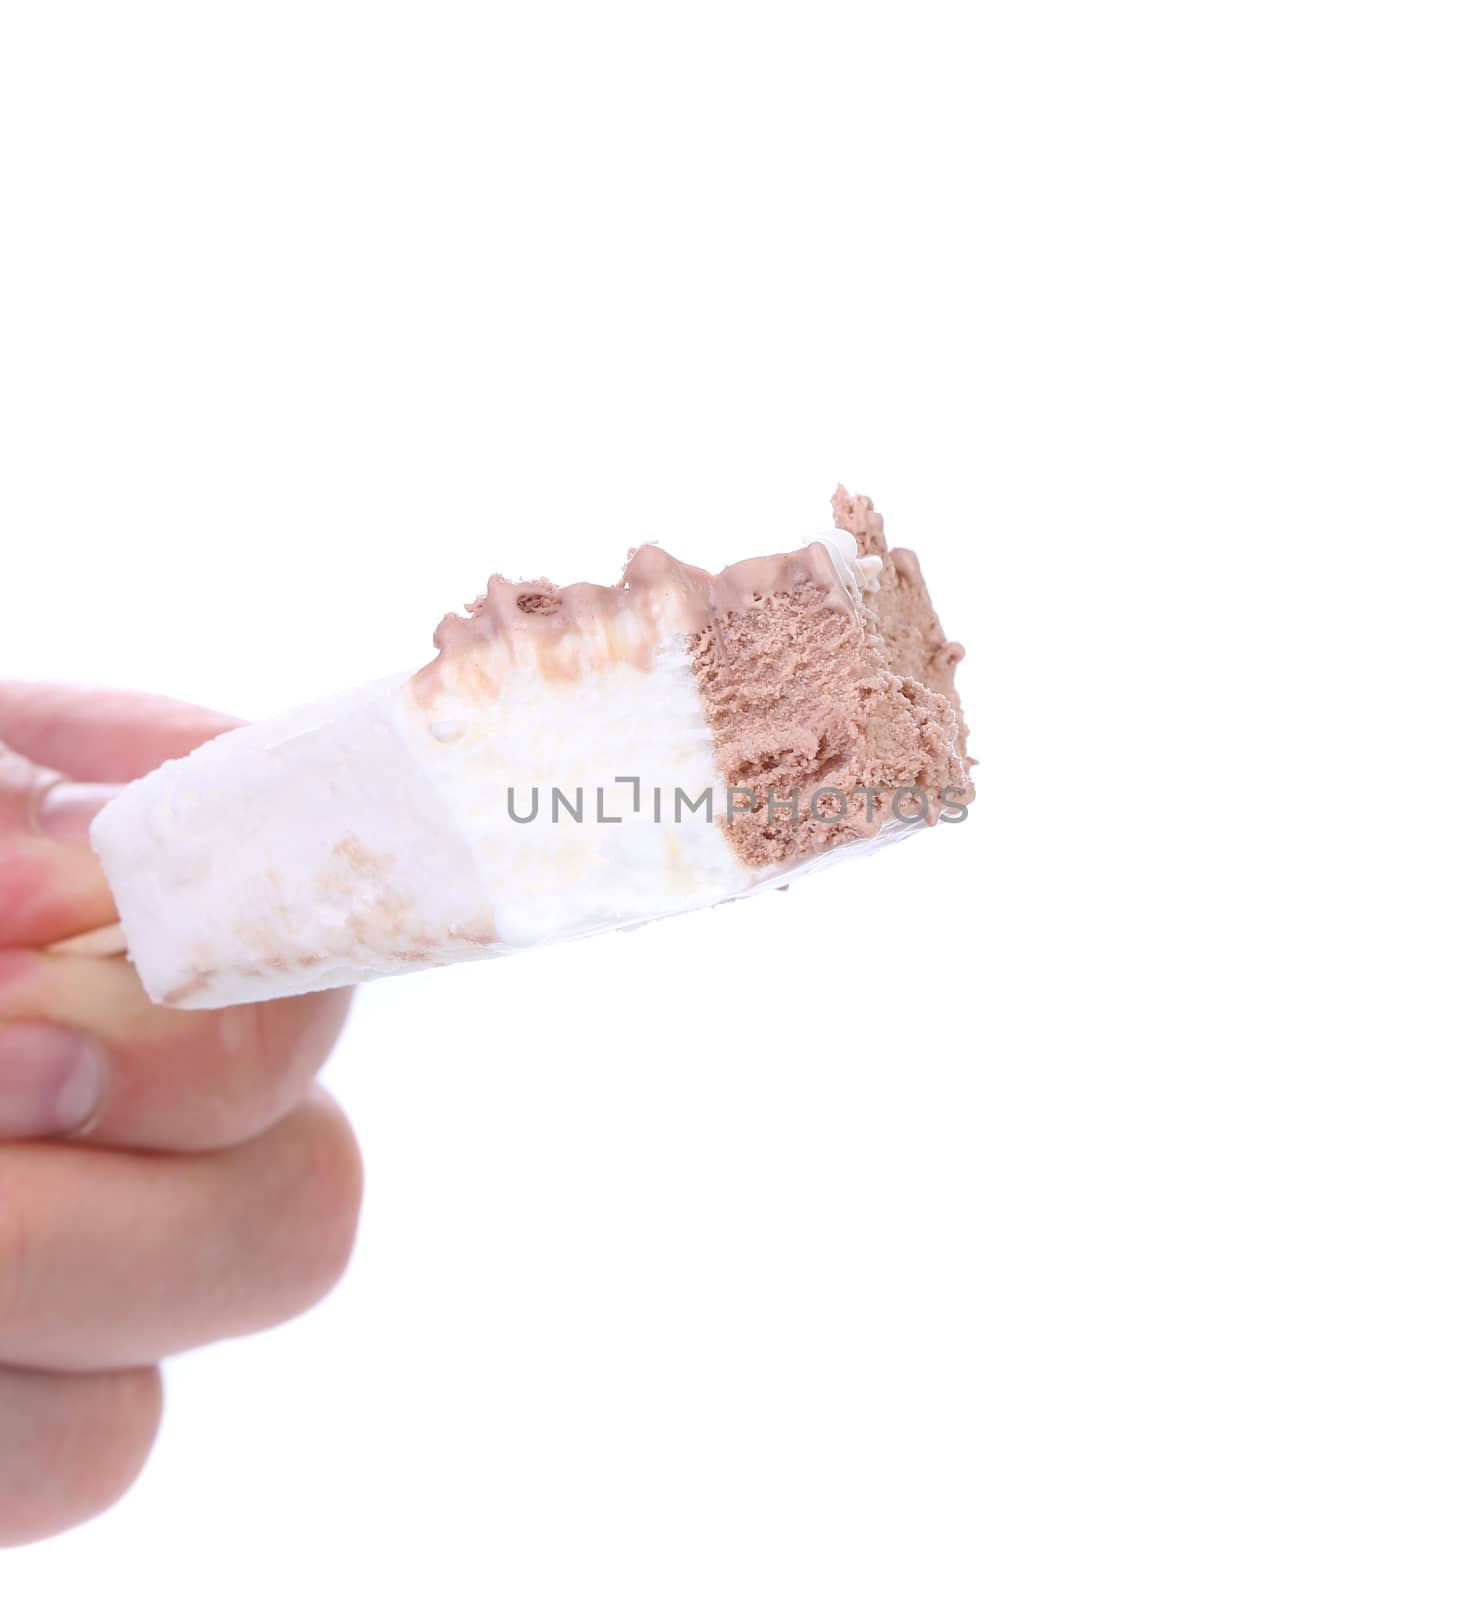 Hand holds bitten vanilla and chocolate ice cream. White background.